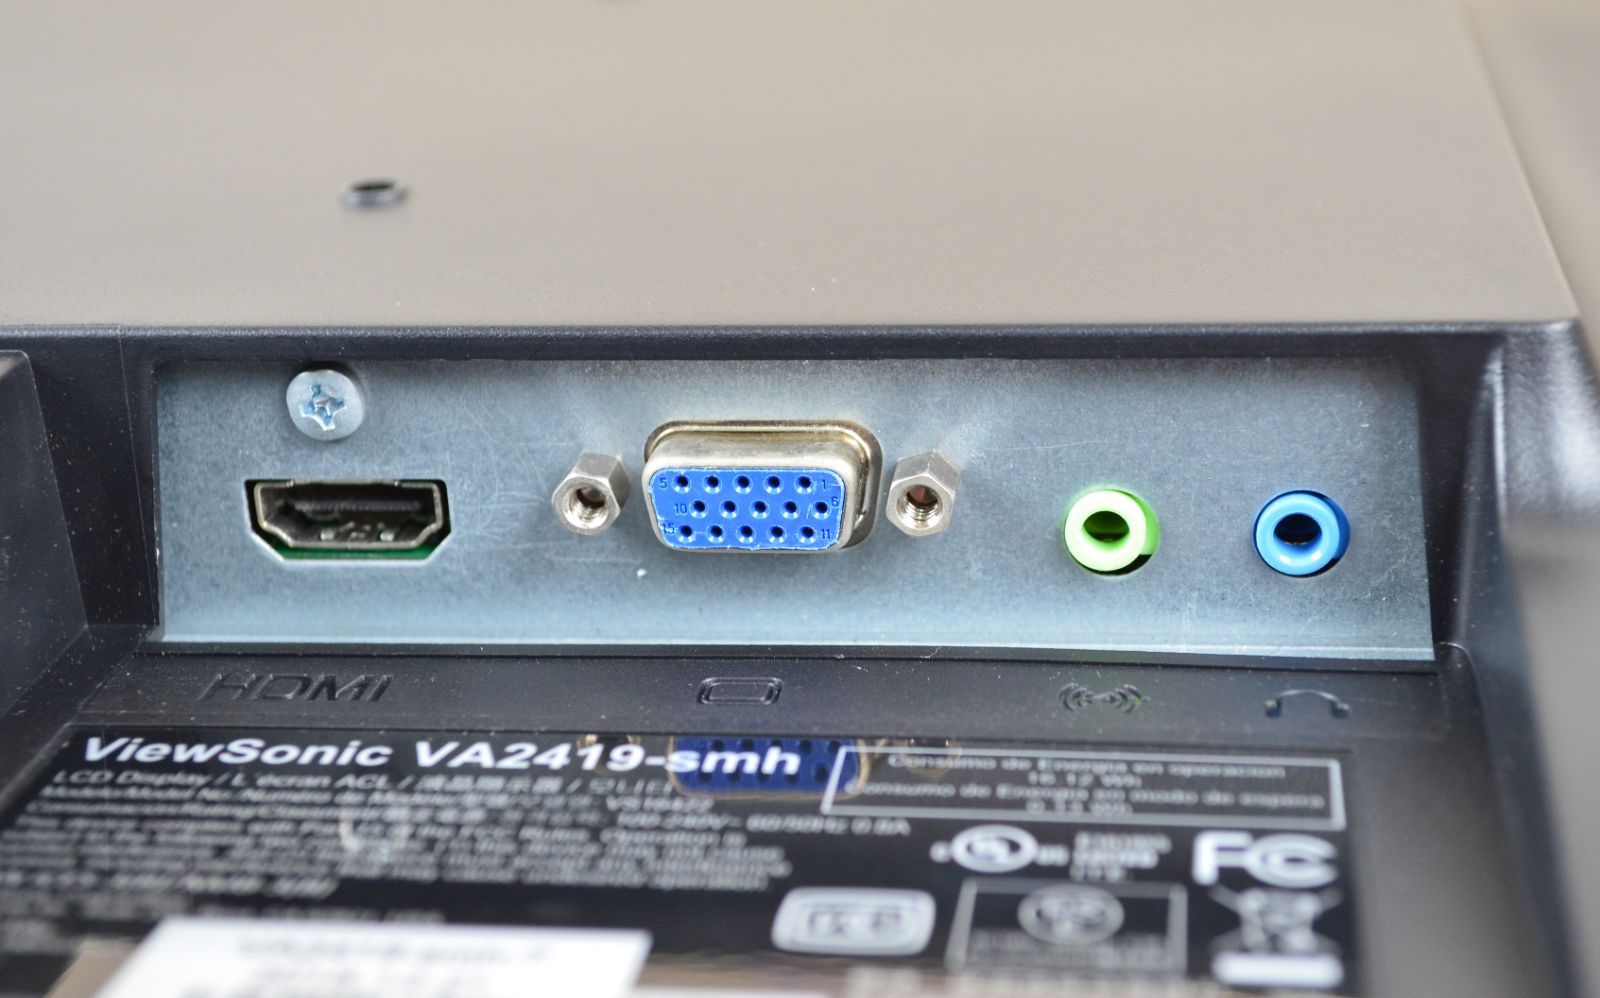 ViewSonic　狭額　27型　フルHD　HDMI　スピーカー　IPS　LED